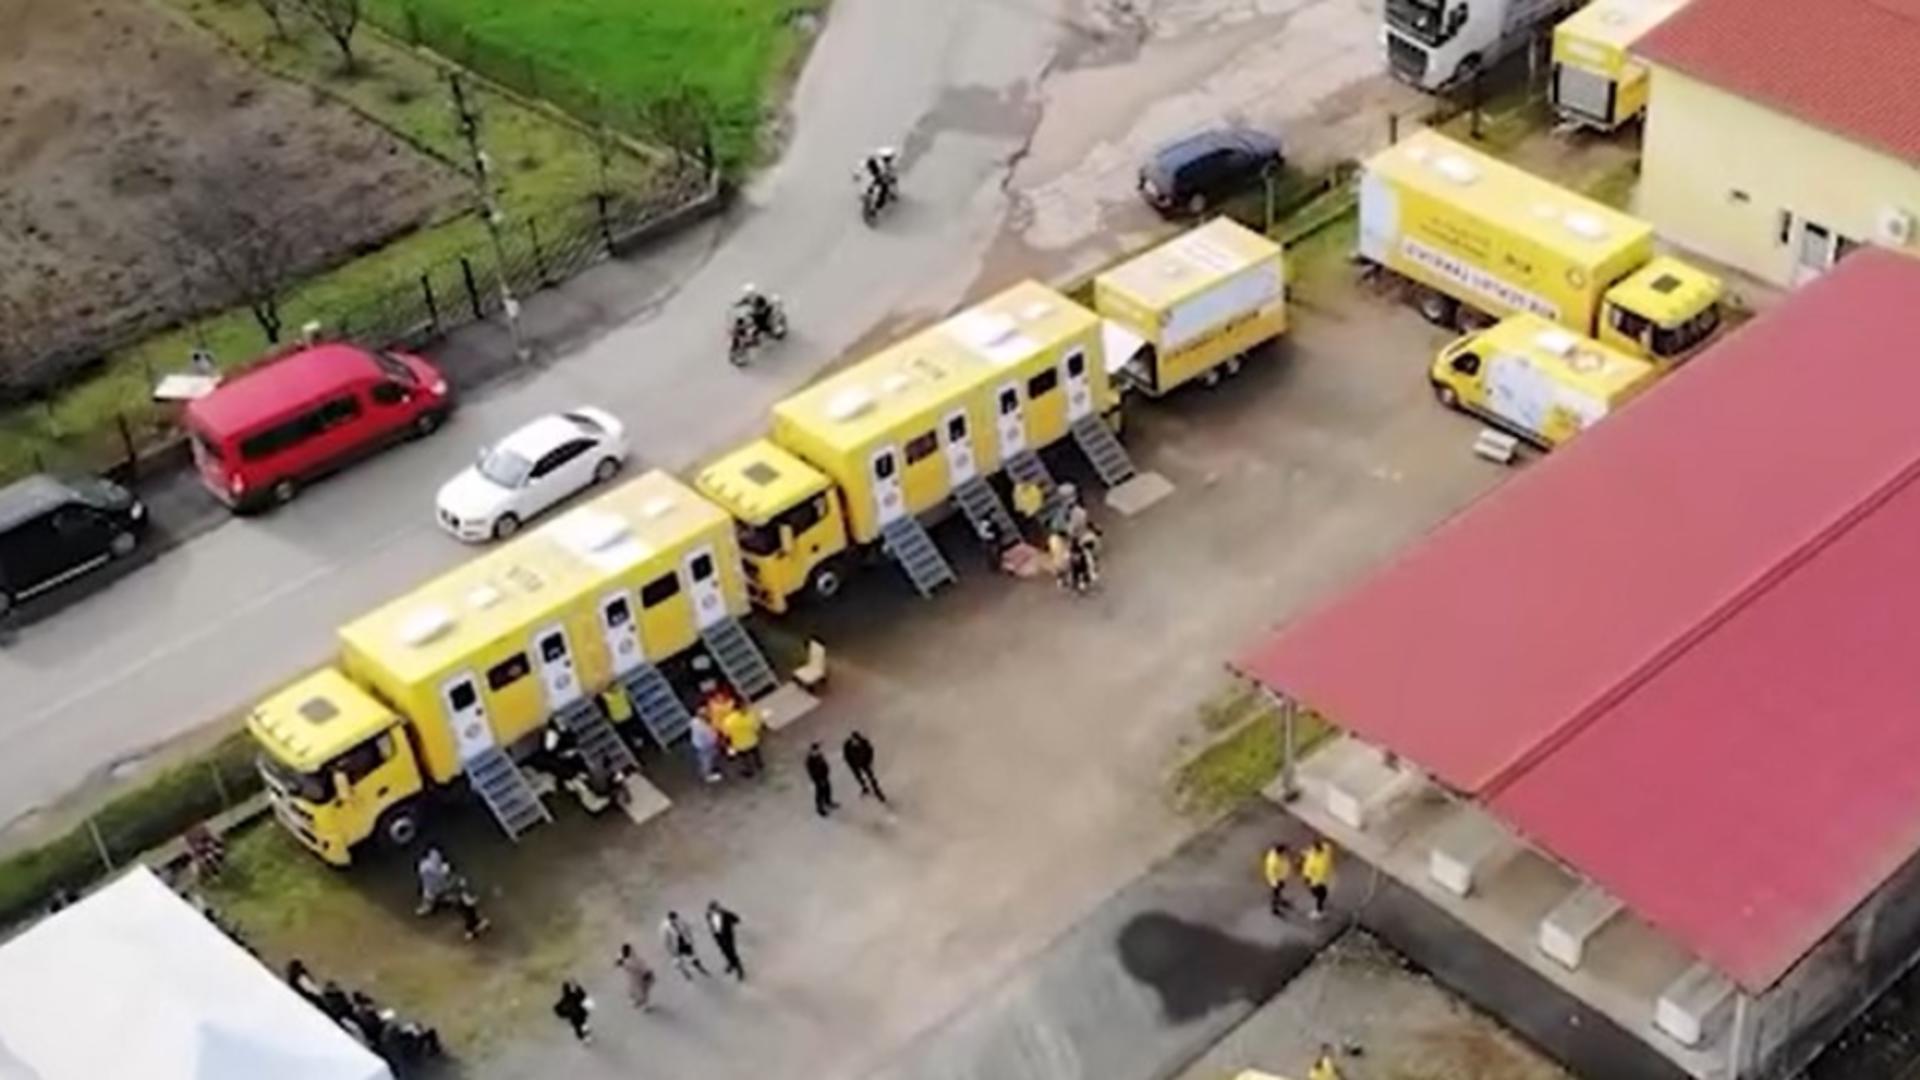 Românii din satele țării, uitați de autorități! Caravana Medicală a ajutat peste 300 de oameni din județul Satu Mare cu servicii medicale gratuite